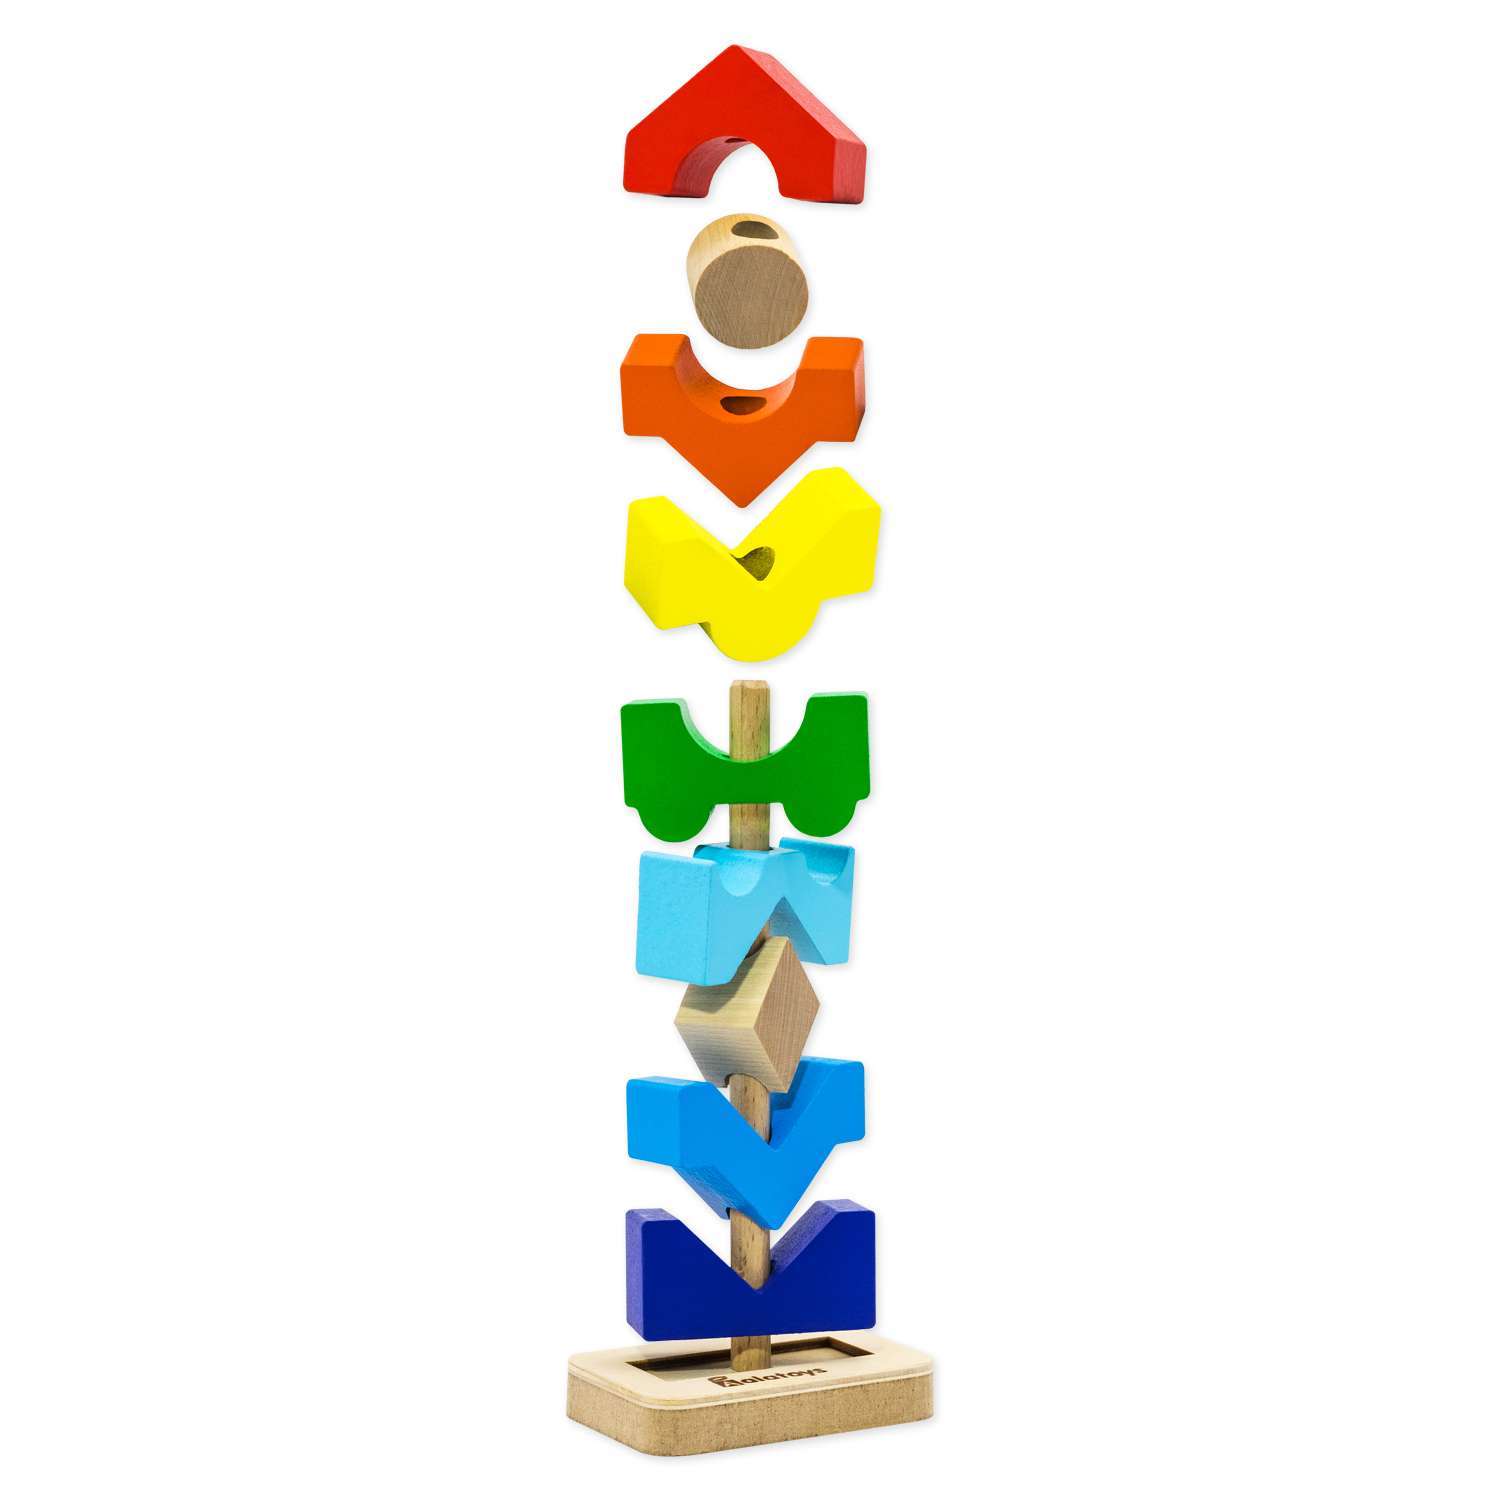 Пирамидка деревянная Башня Alatoys развивающая обучающая Монтессори игрушка для малышей - фото 11